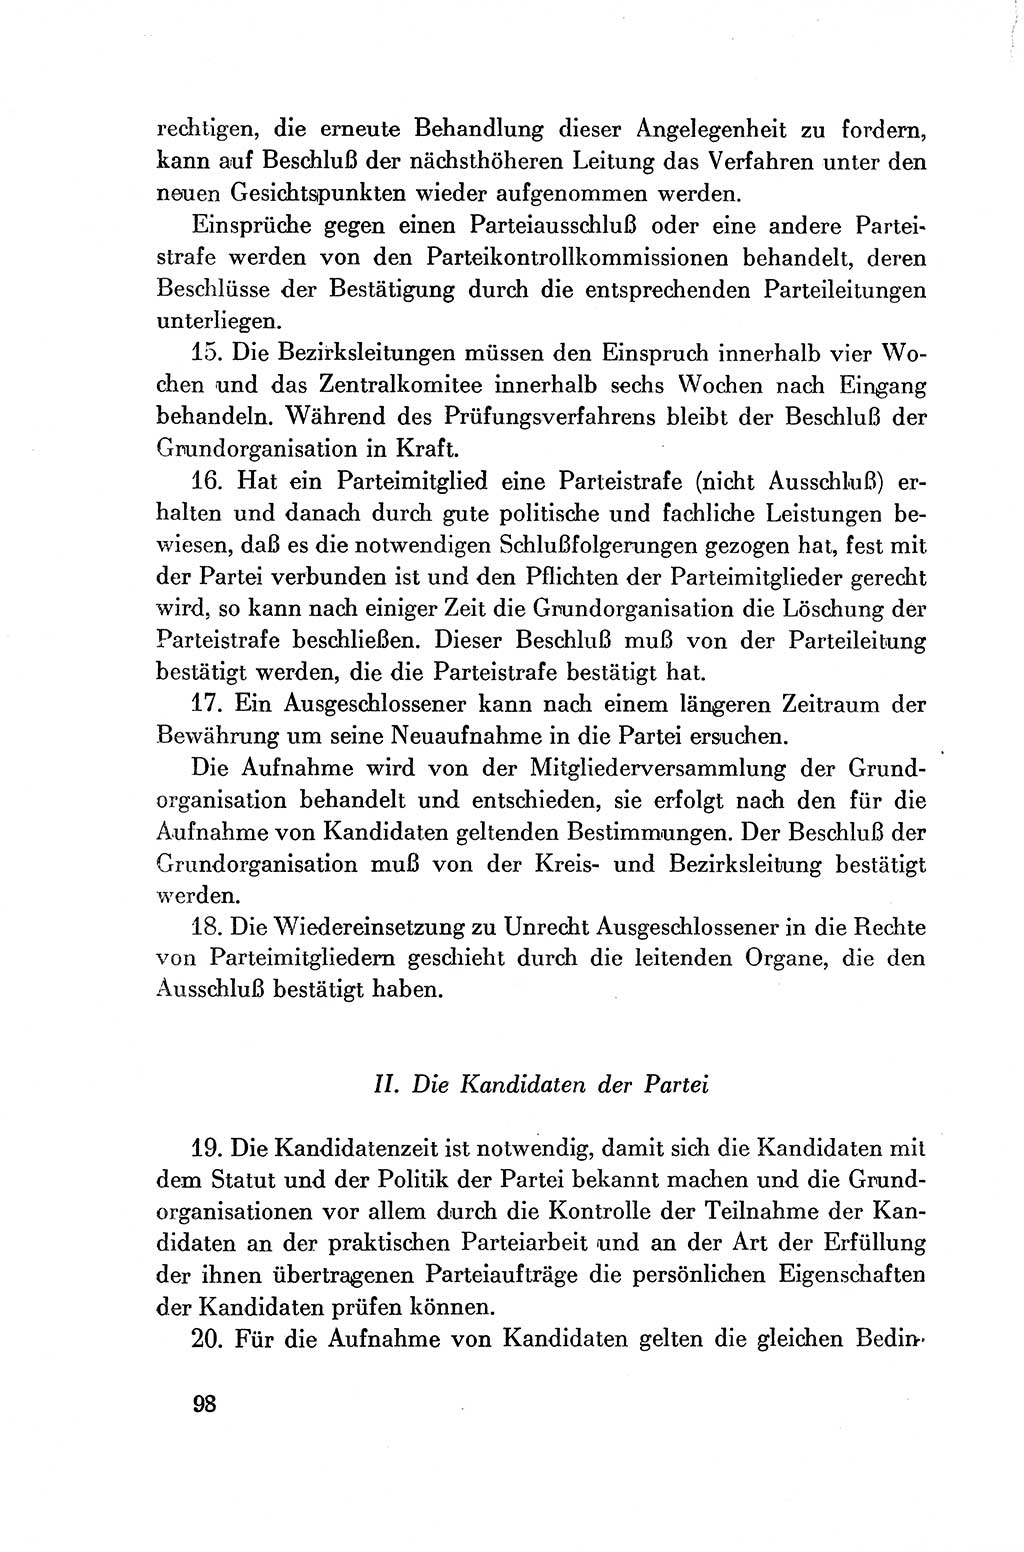 Dokumente der Sozialistischen Einheitspartei Deutschlands (SED) [Deutsche Demokratische Republik (DDR)] 1954-1955, Seite 98 (Dok. SED DDR 1954-1955, S. 98)